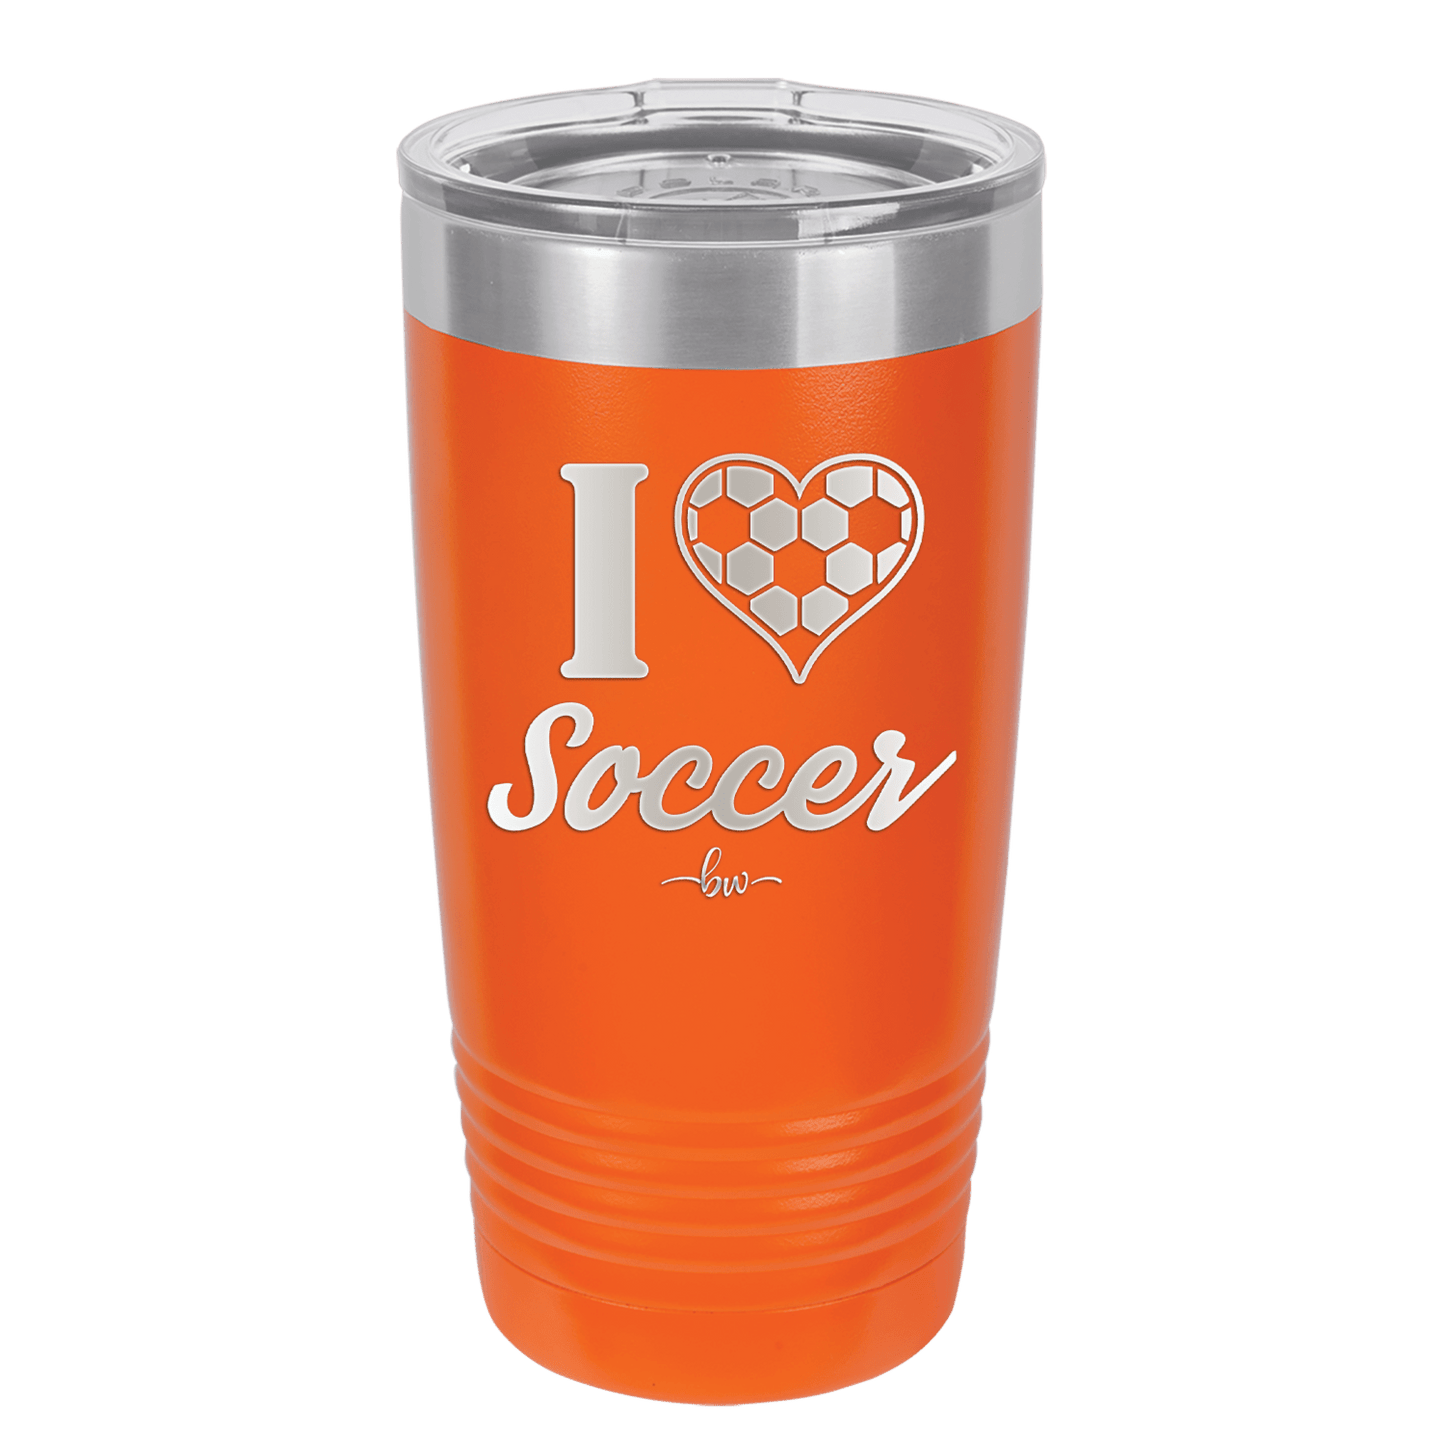 I Heart Soccer - Laser Engraved Stainless Steel Drinkware - 1909 -